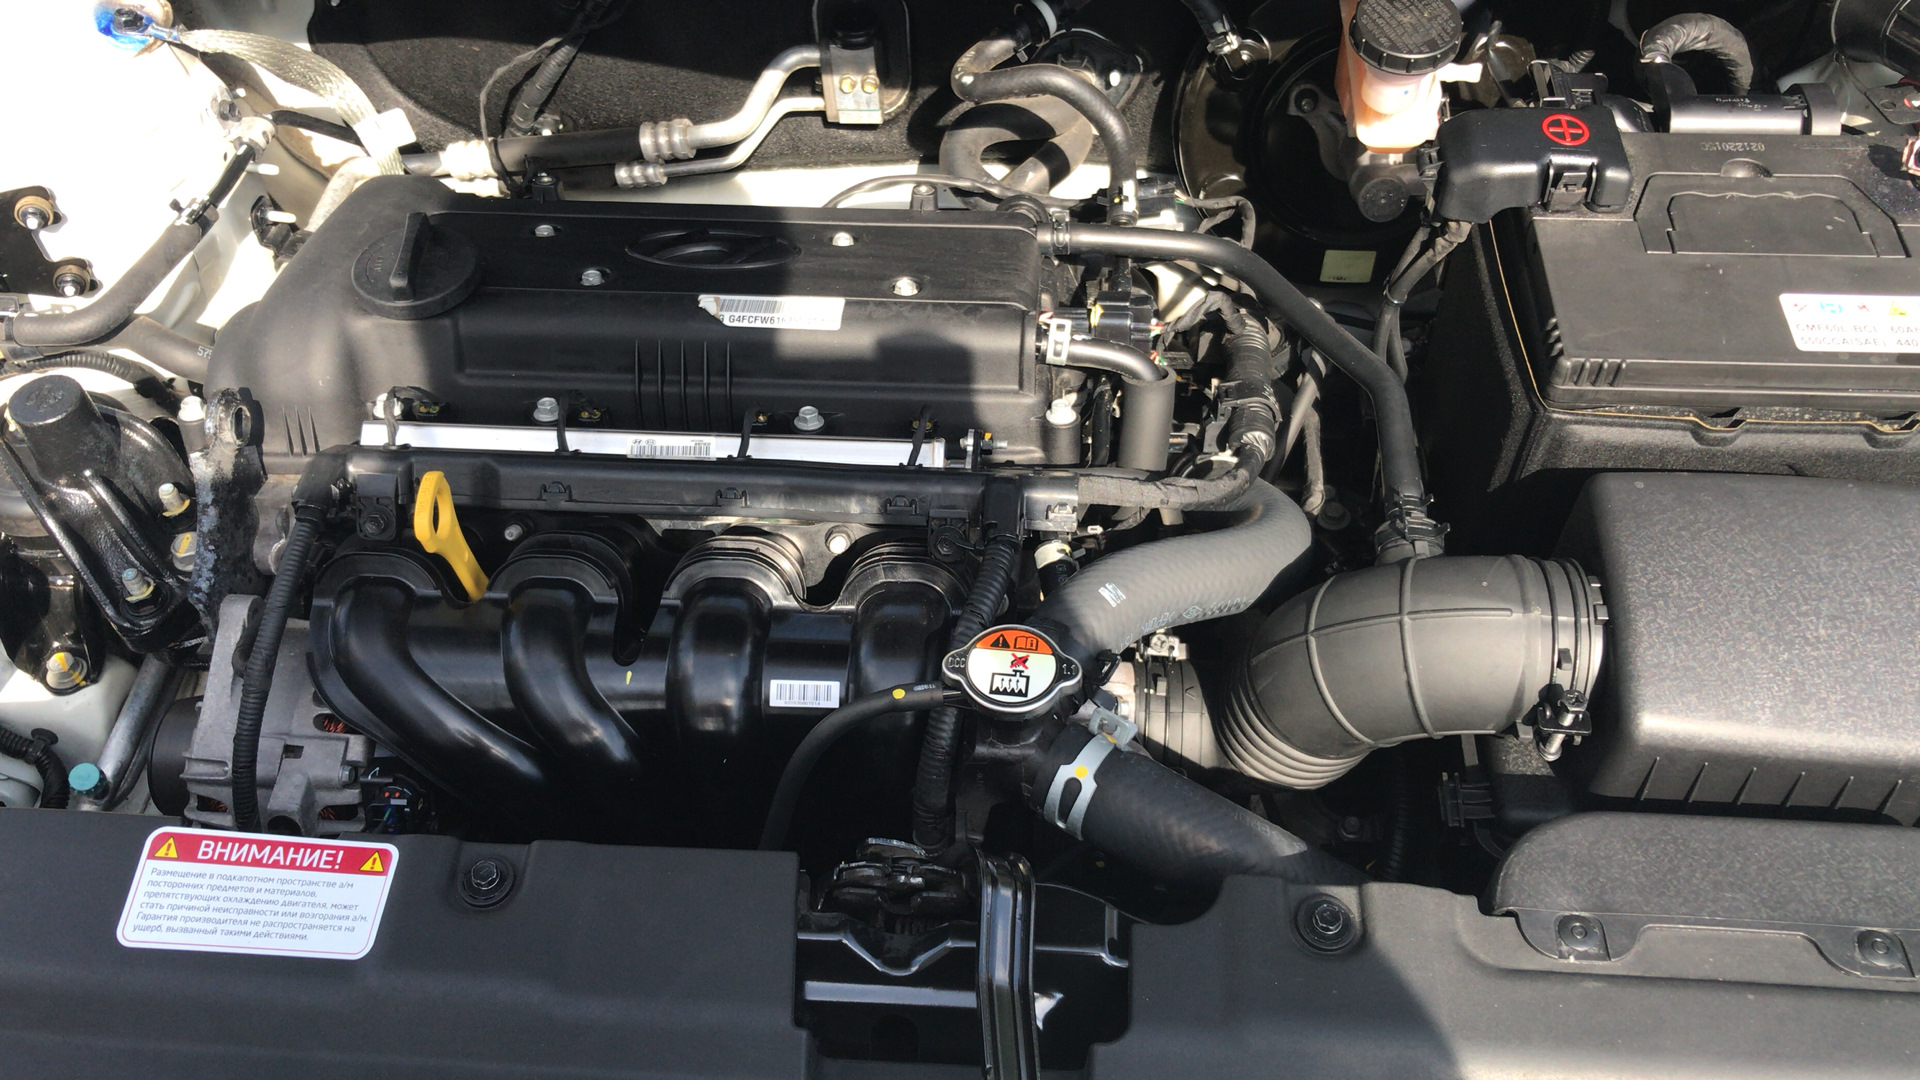 Двигатель на хендай солярис 1.6 цена. Солярис 2016 АКБ. Солярис 1 двигатель троит. Солярис 1.6 цепь управления нагревателя артикул 2016 год. Полка момента двигателя Hyundai Solaris 1.6.